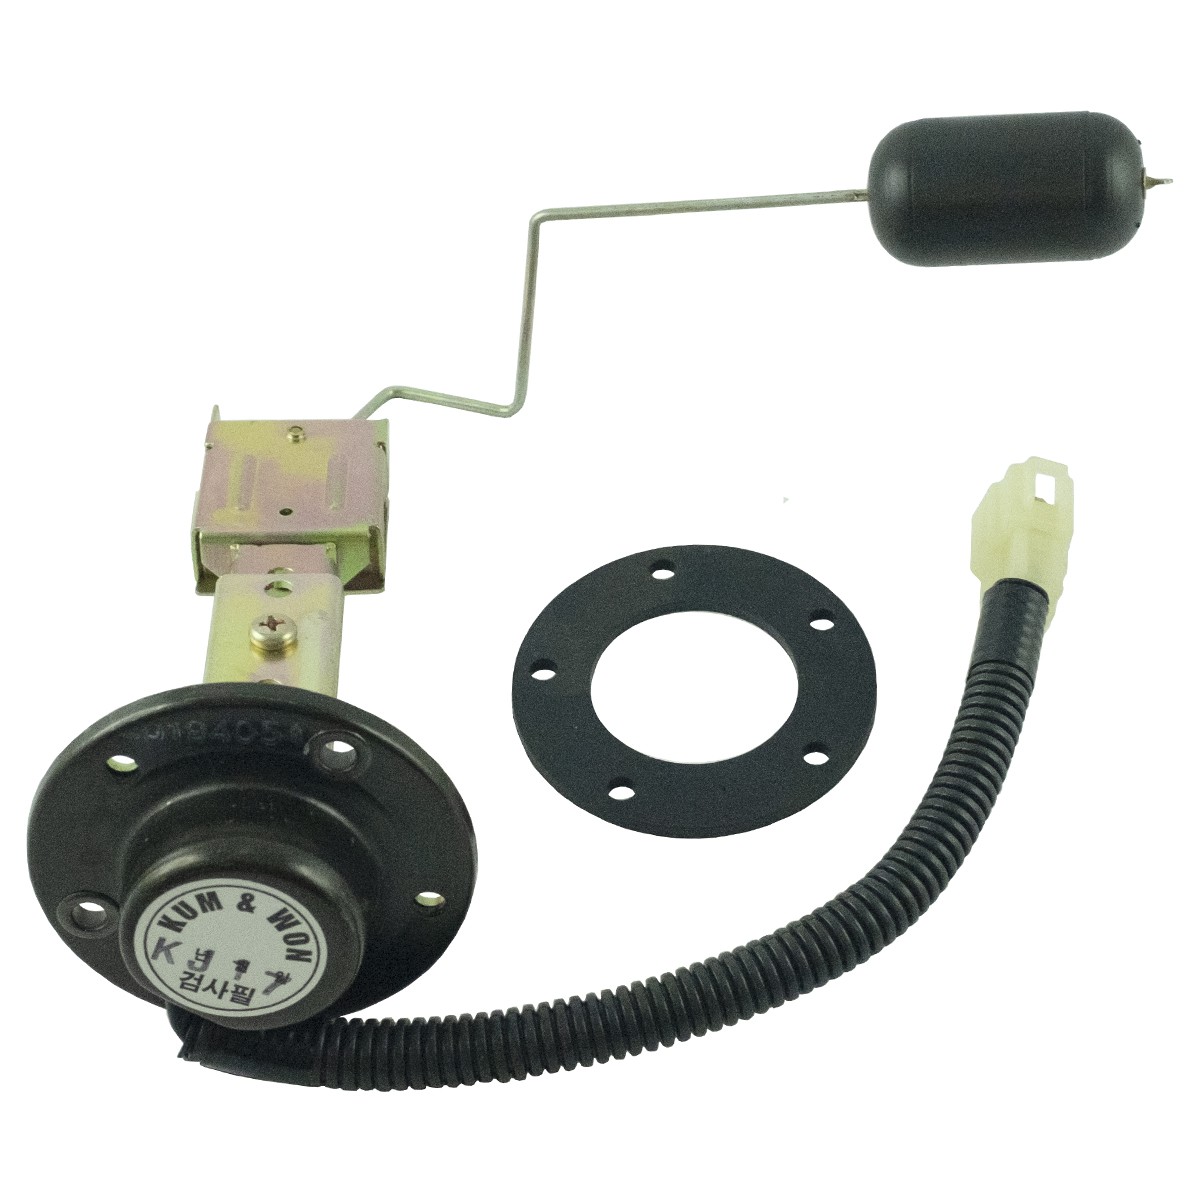 Fuel level sensor / LS XJ 25 / 40194054